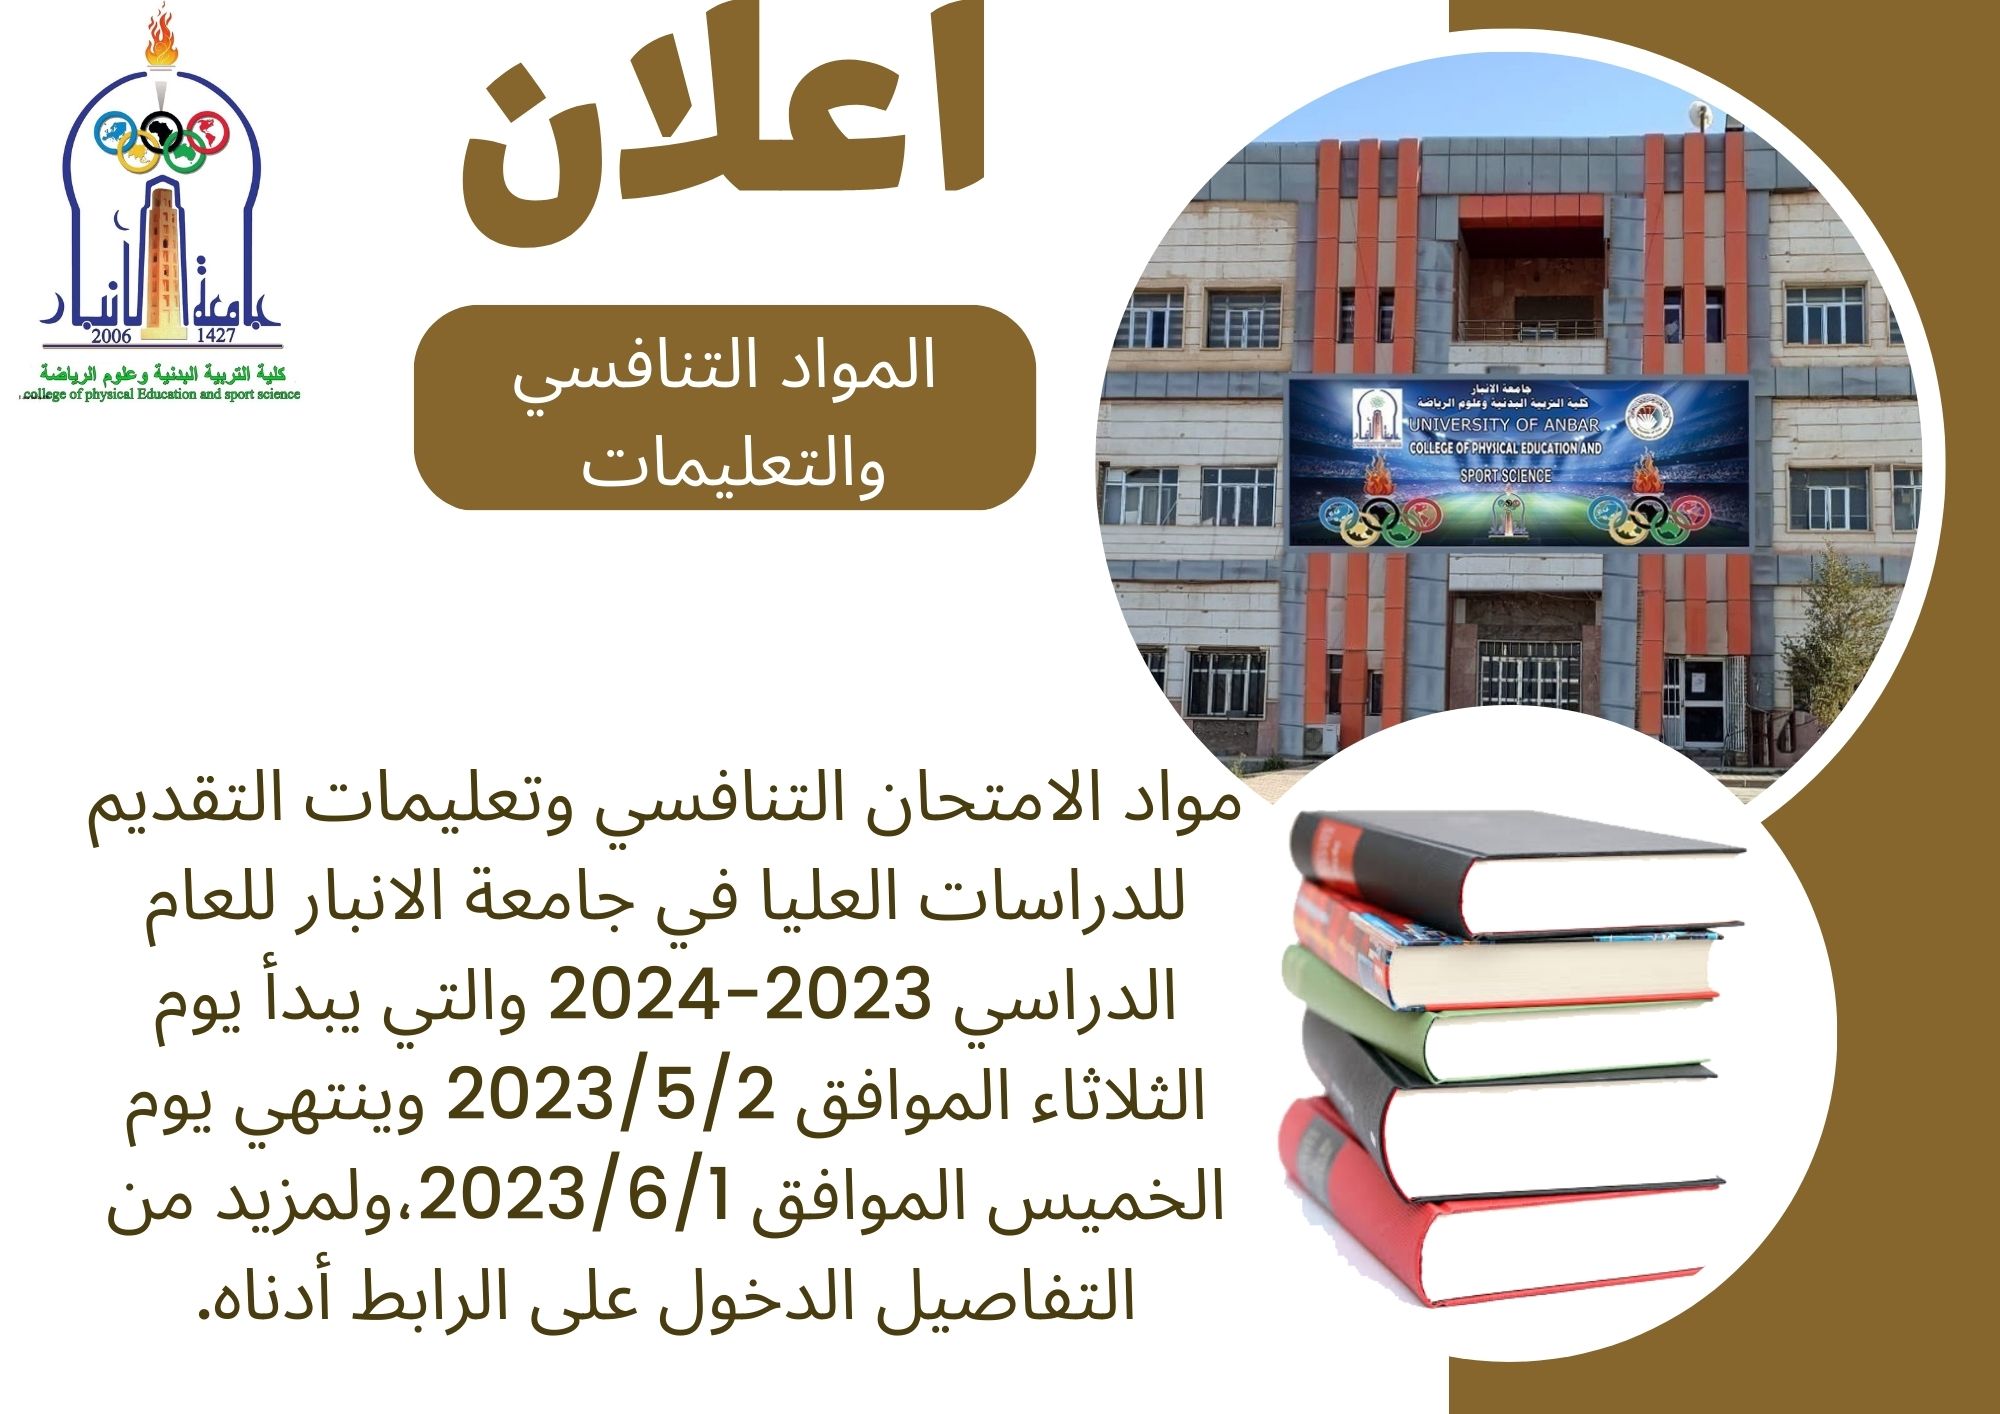 مواد الامتحان التنافسي وتعليمات التقديم للدراسات العليا في جامعة الانبار للعام الدراسي 2023-2024